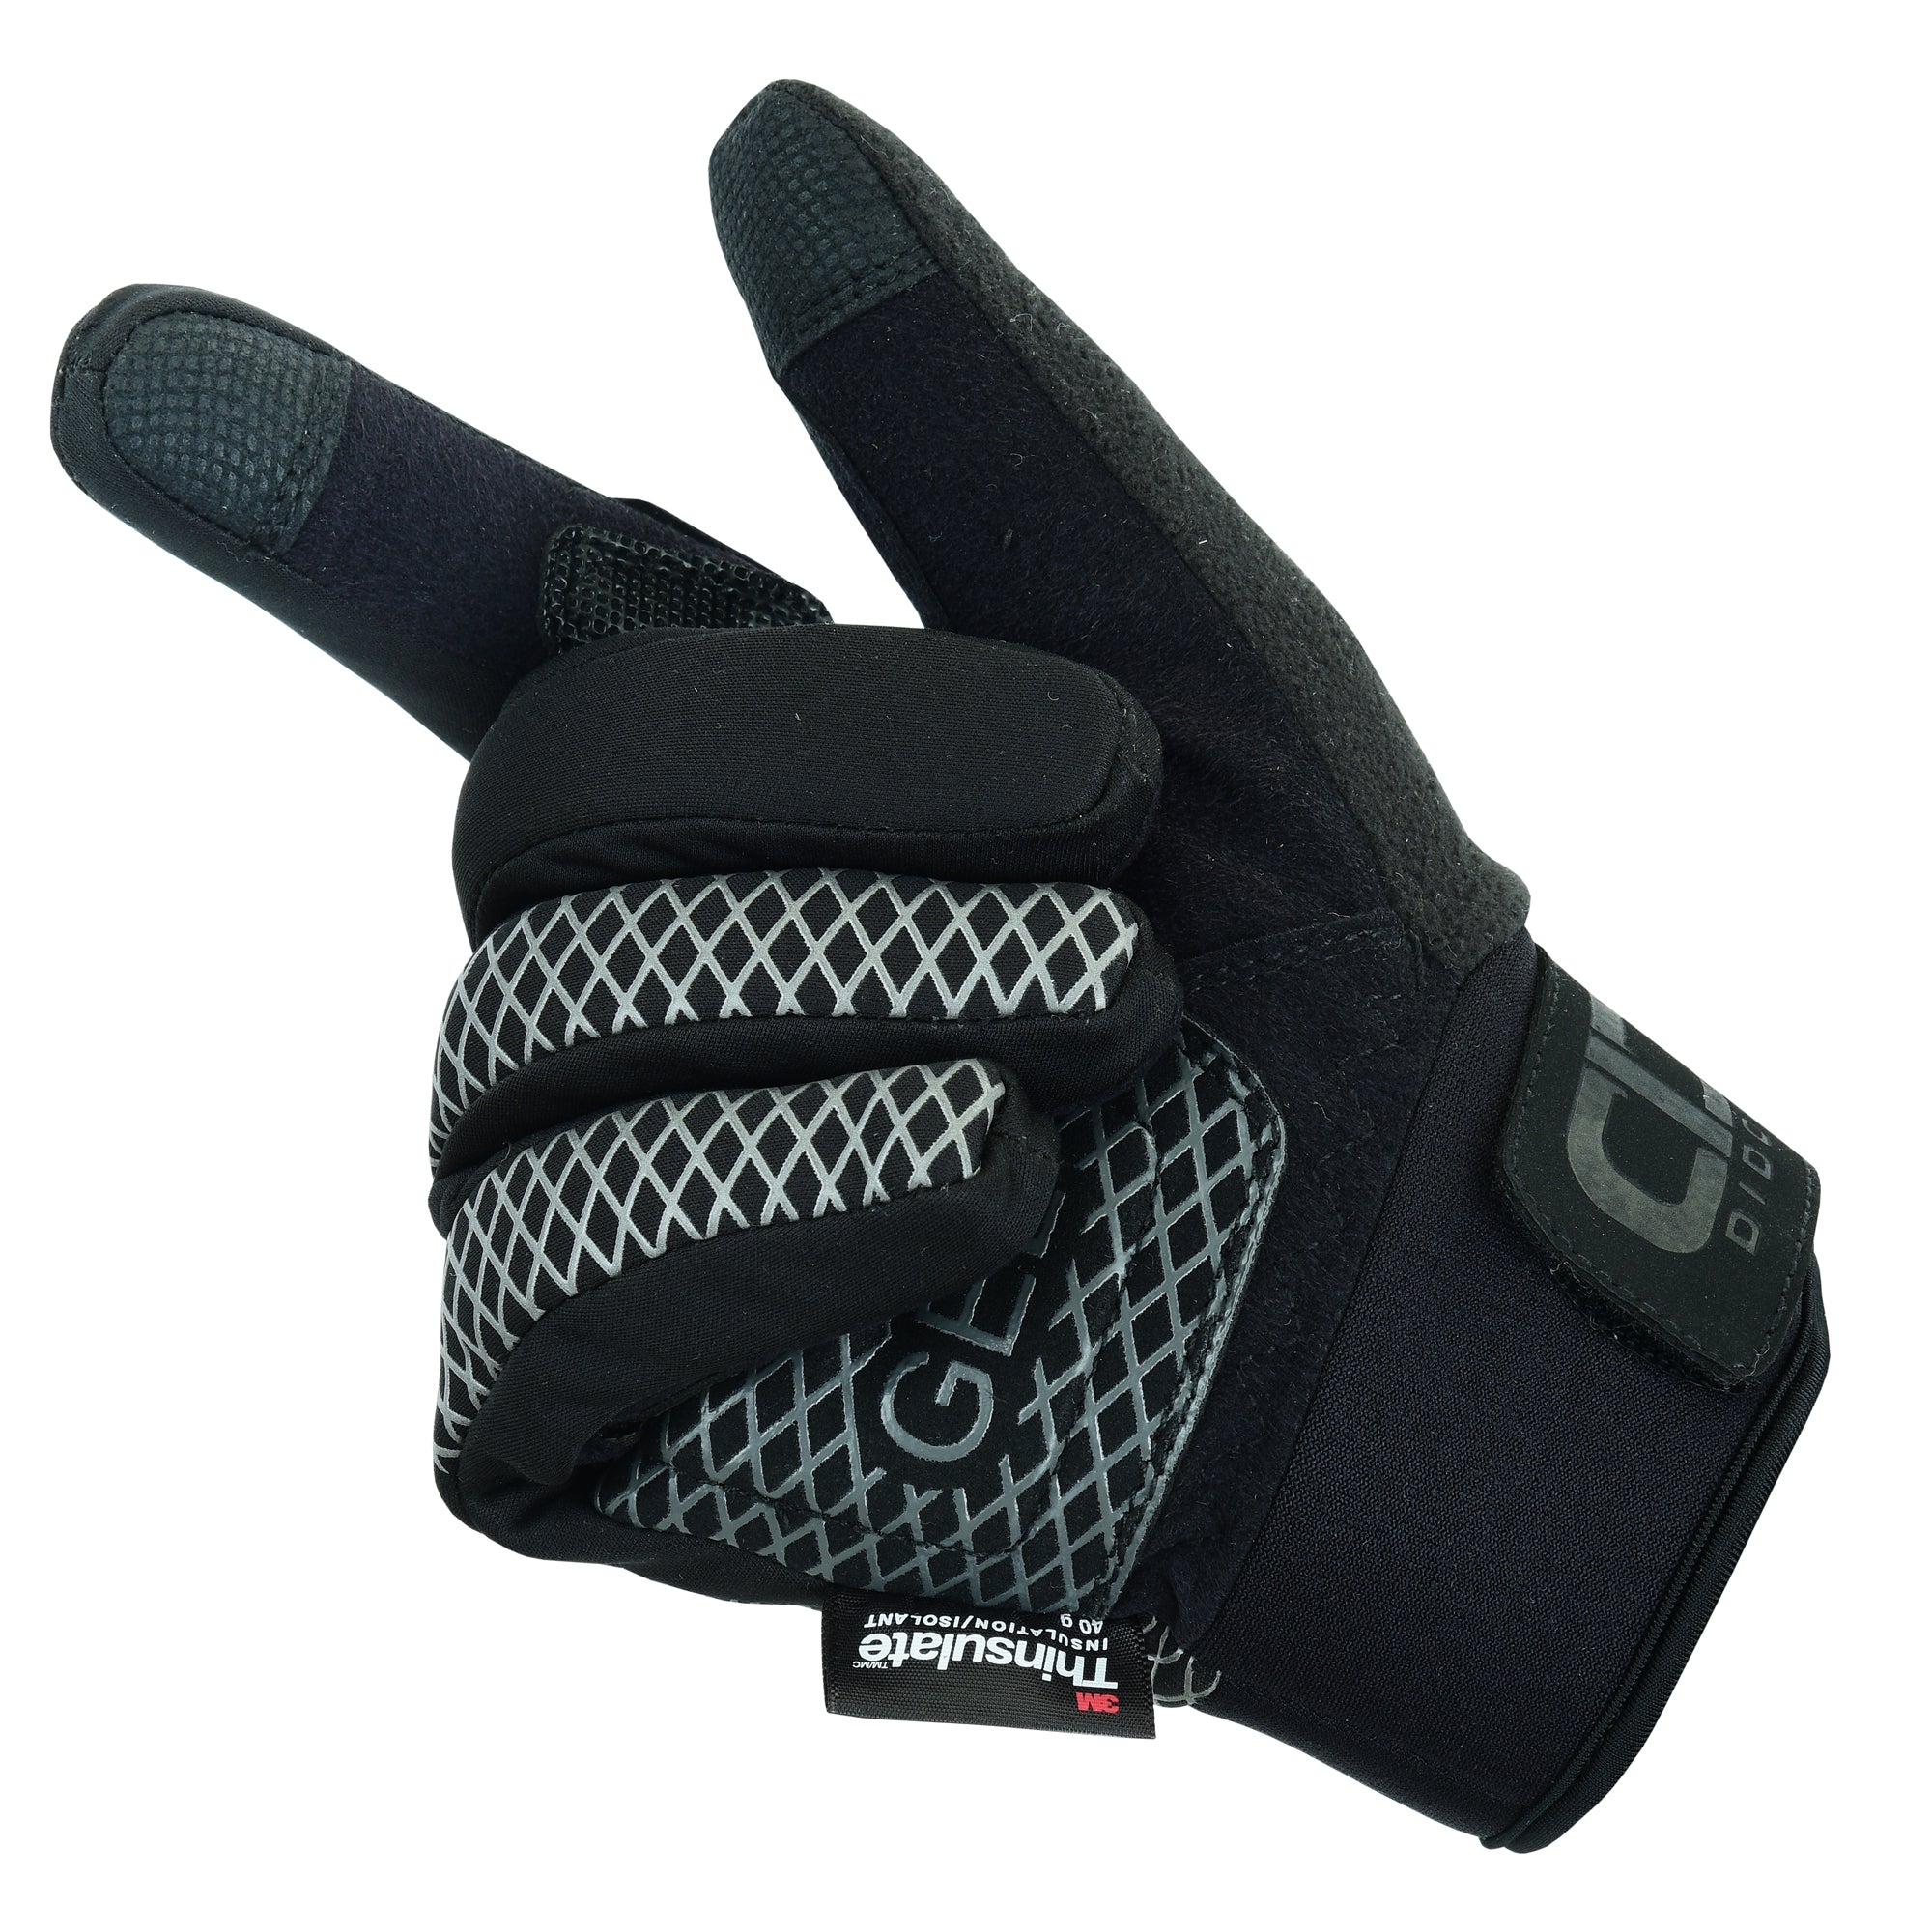 Women's Pro Waterproof & Wind Resistant Winter Gloves Black